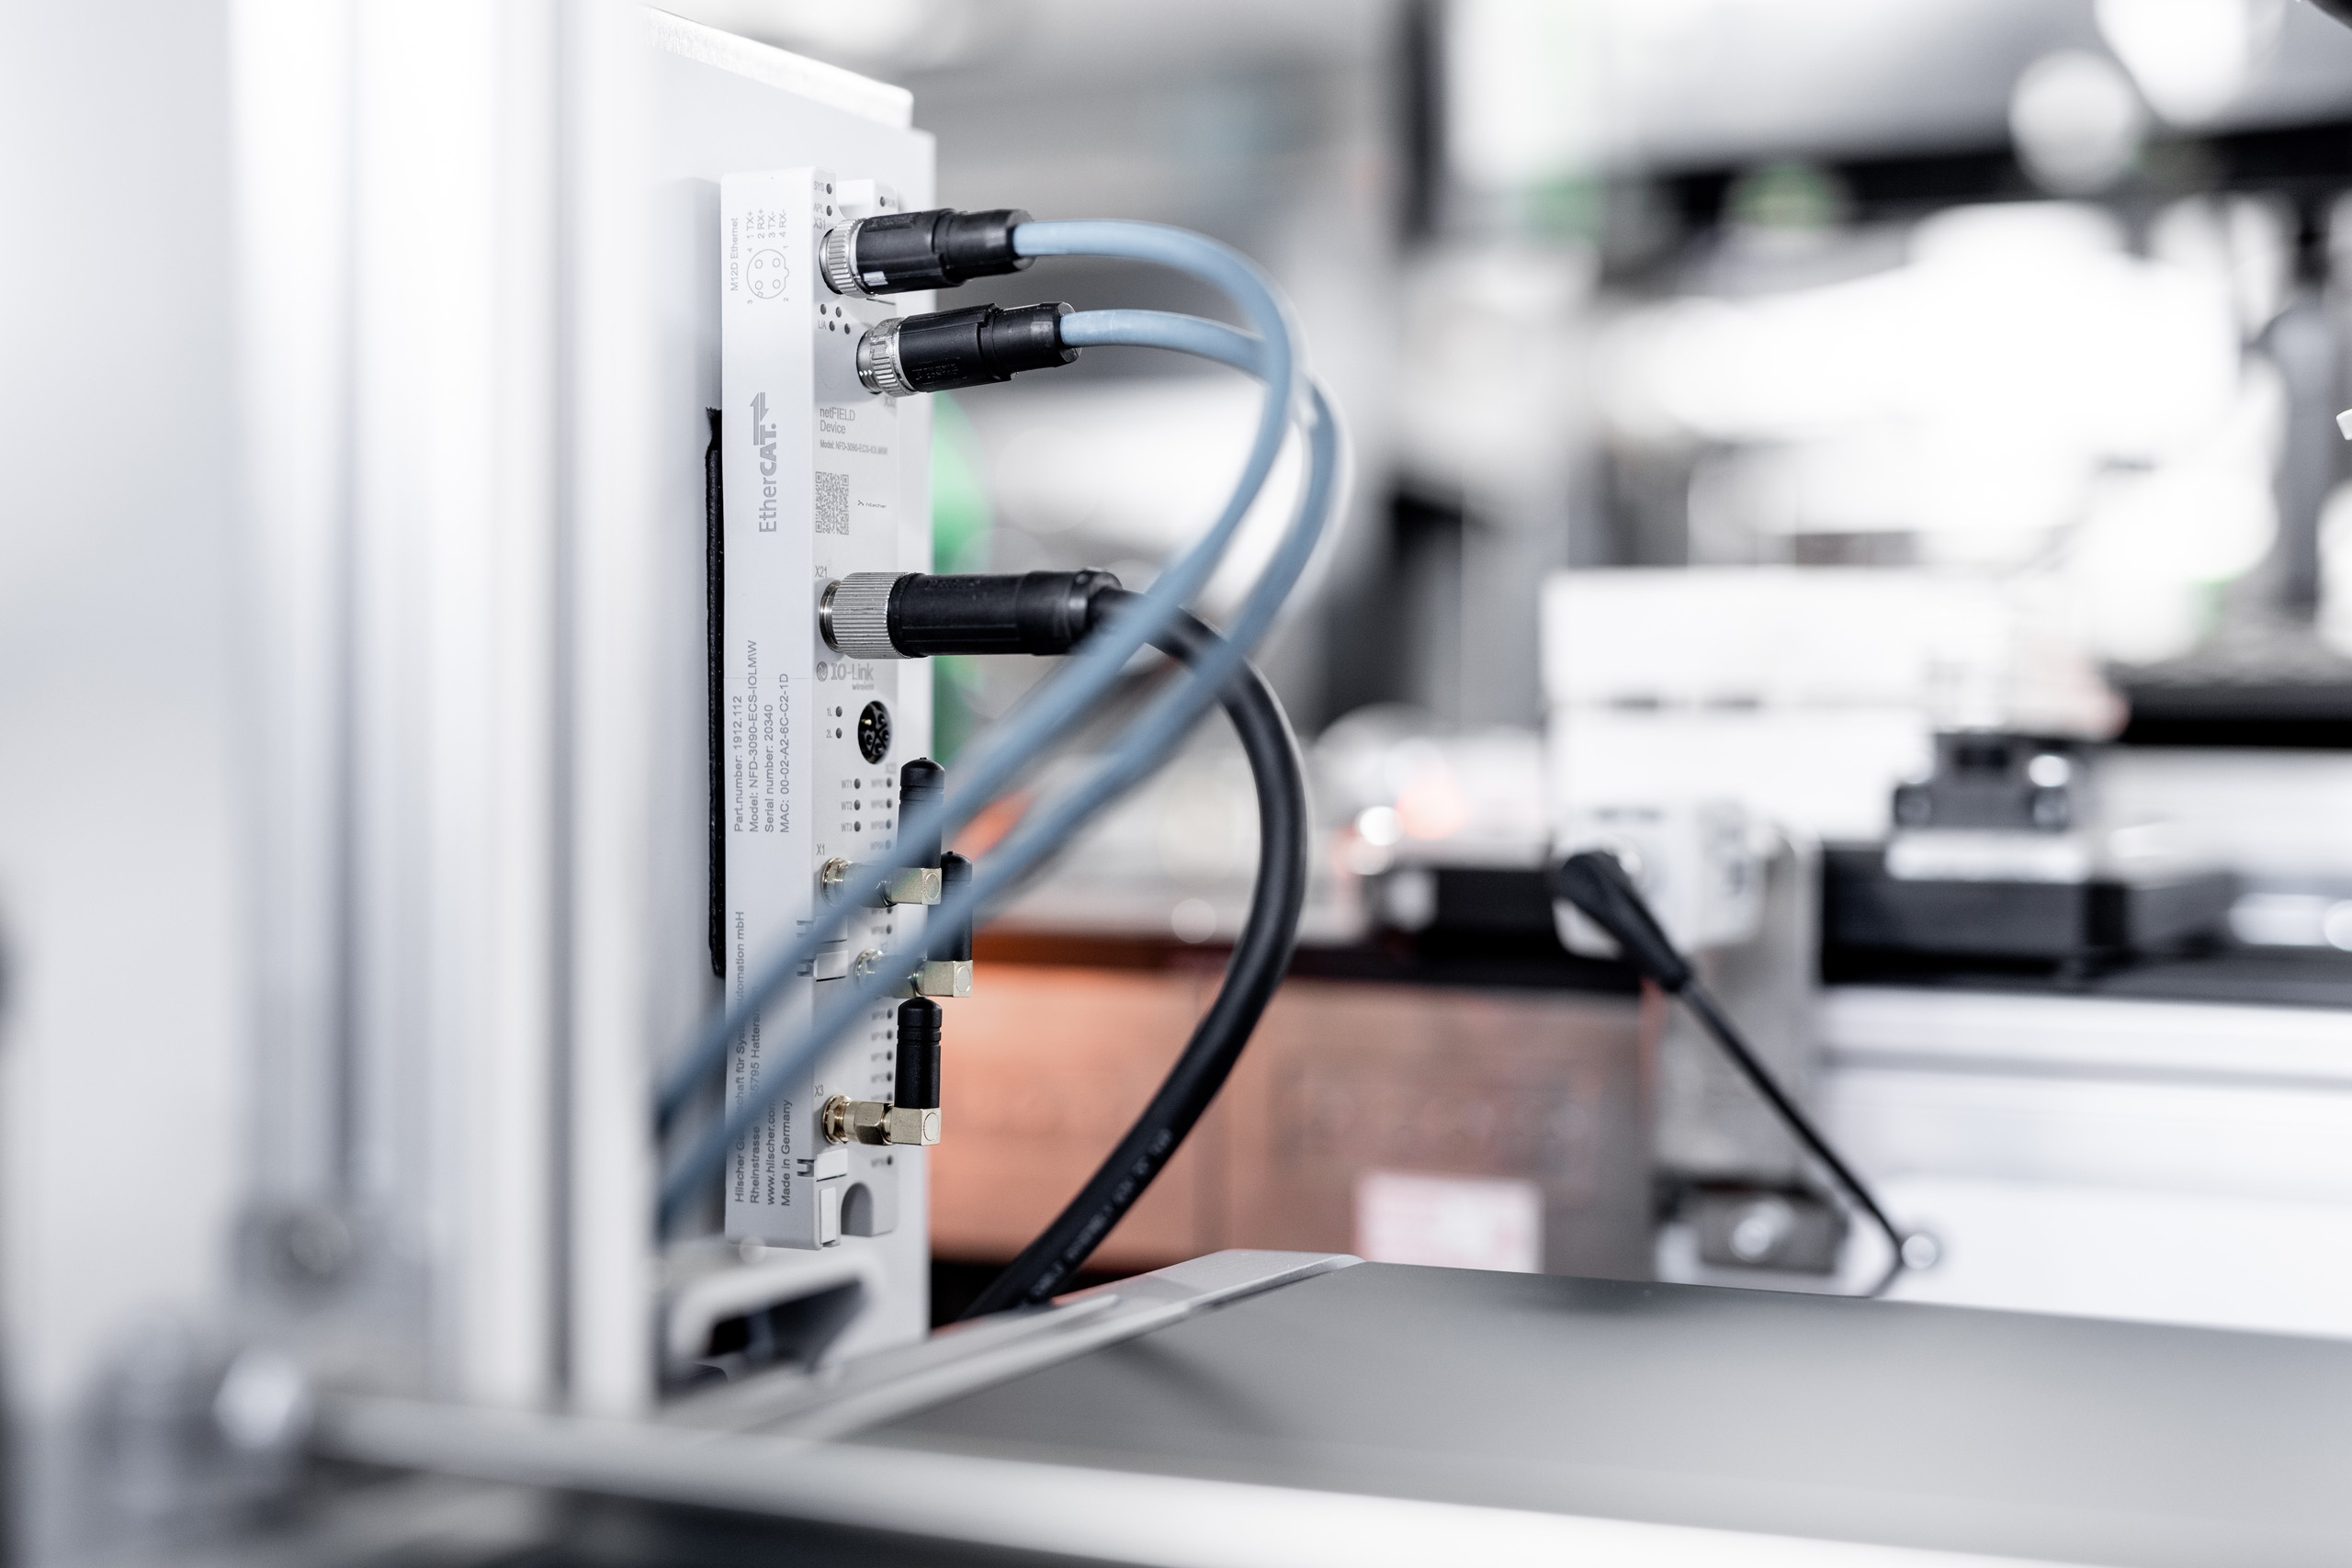 Ein netFIELD Device IO-Link Wireless Master ist an ein Kommunikationsnetzwerk angeschlossen und überträgt Daten von drahtlos verbundenen IO-Link-Sensoren.